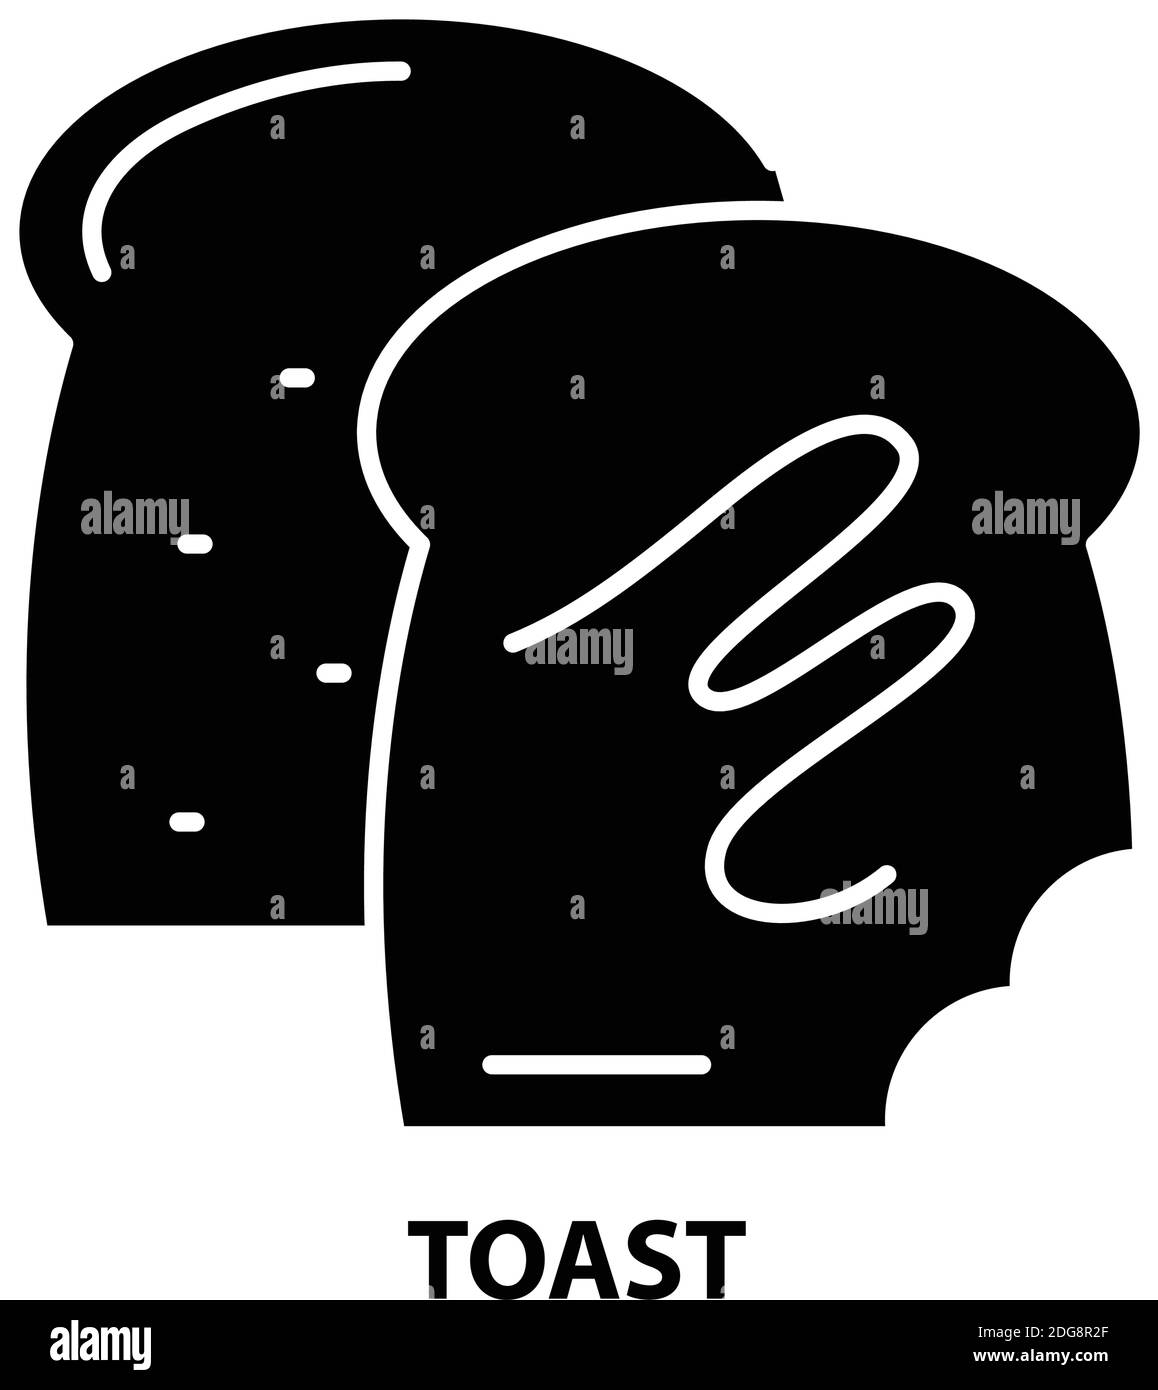 Toast-Symbol, schwarzes Vektorzeichen mit bearbeitbaren Konturen, Konzeptdarstellung Stock Vektor